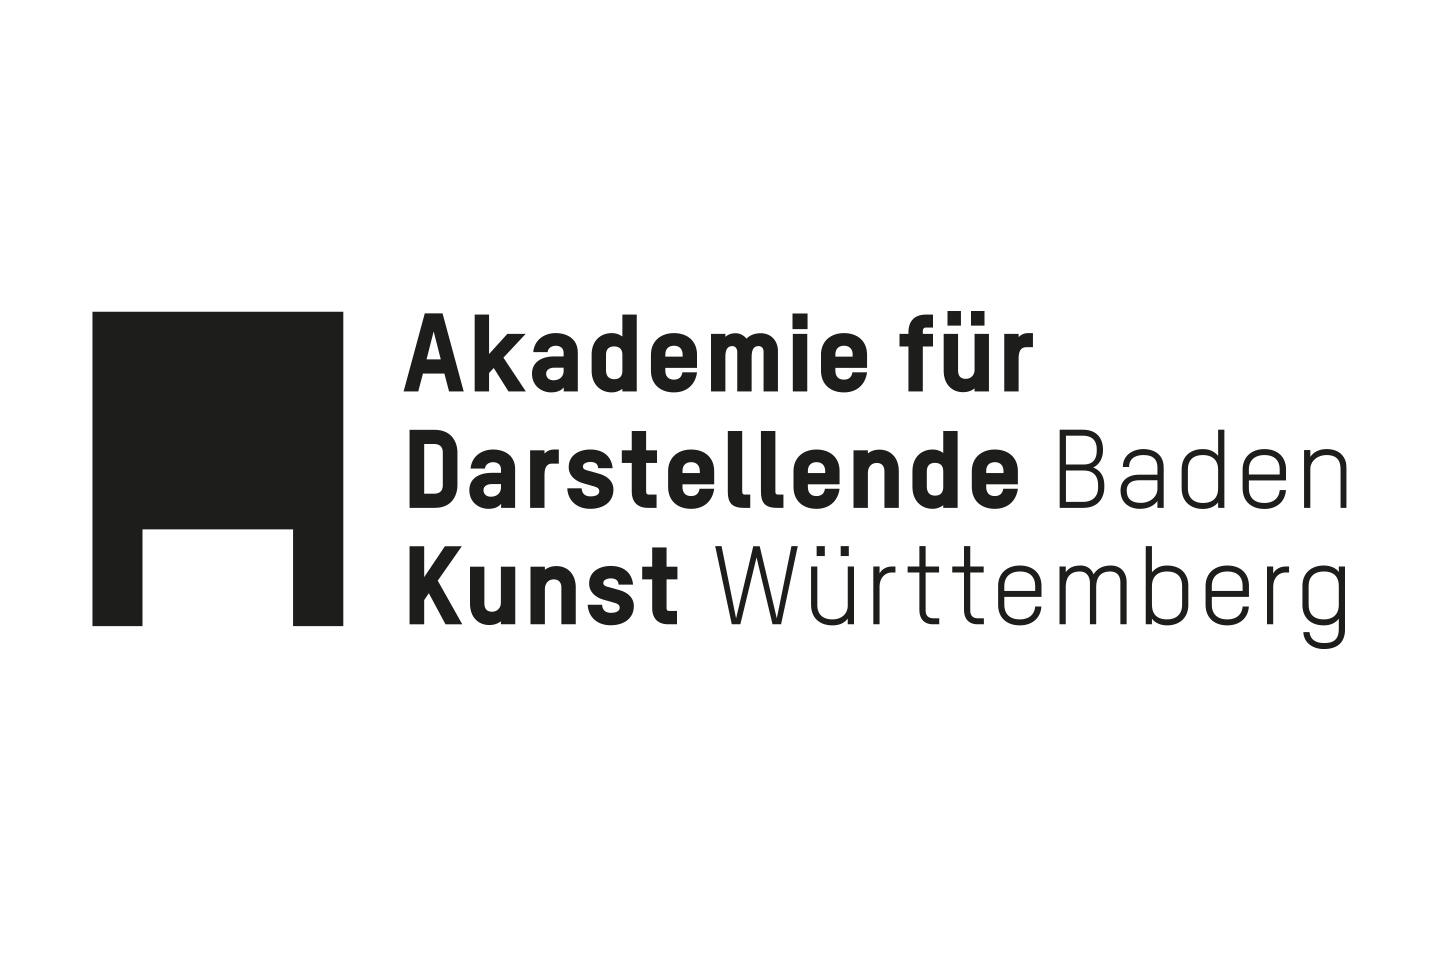 Logo Akademie für Darstellende Kunst Baden-Württemberg